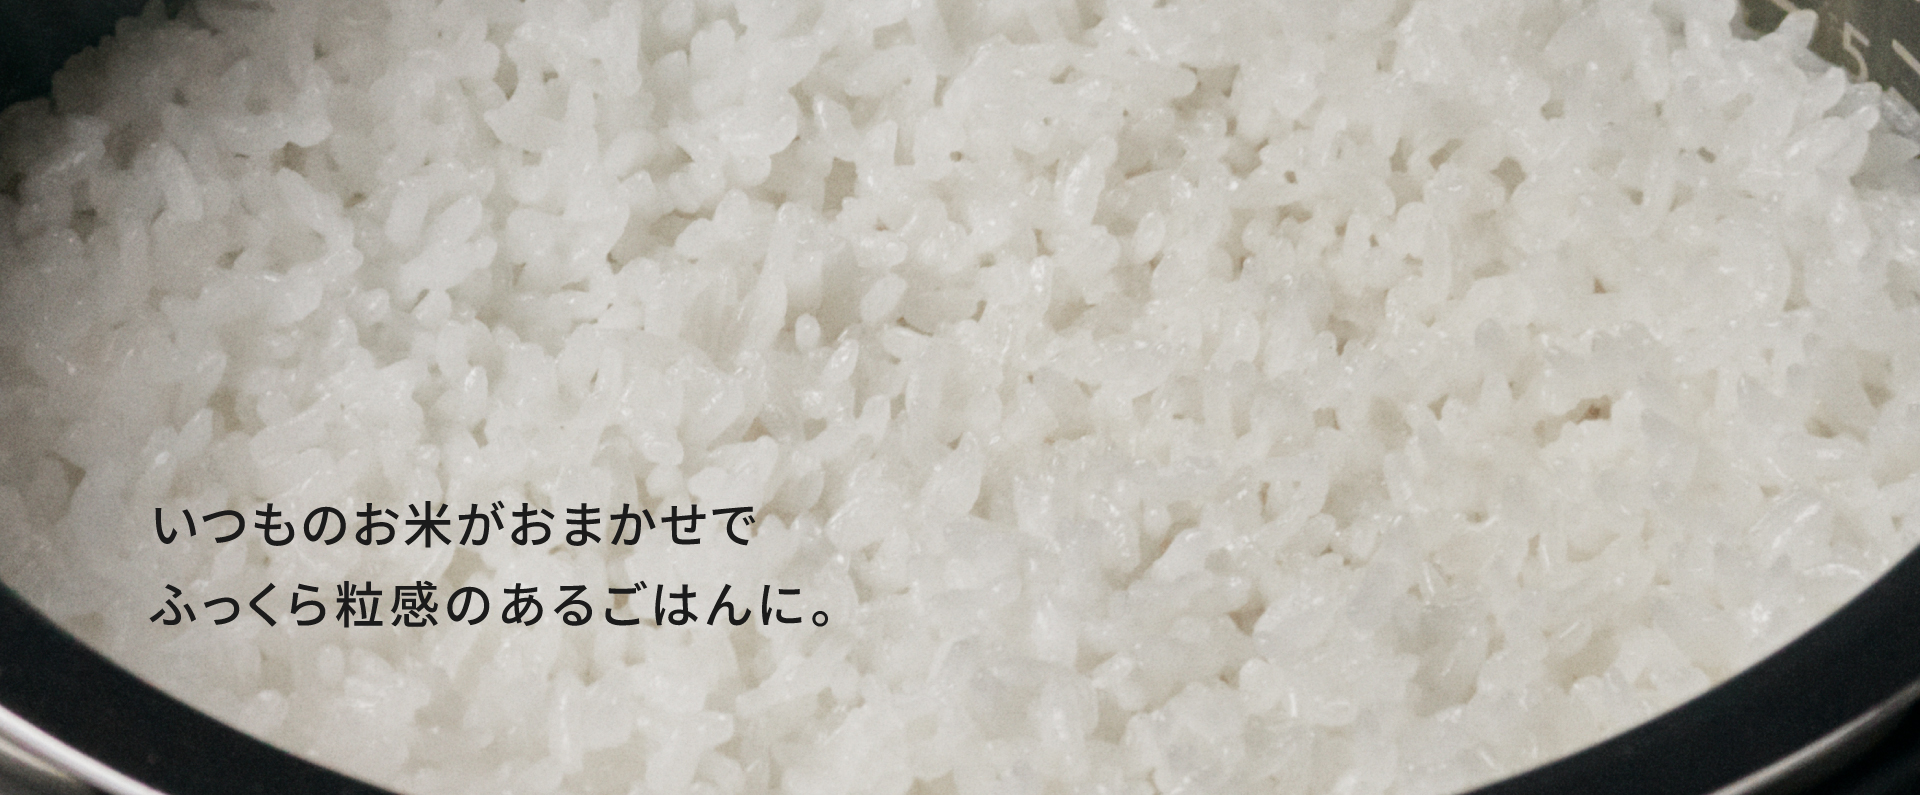 ビストロ匠技AIのイメージ画像です。お米に合わせて炊き方を自動調整。